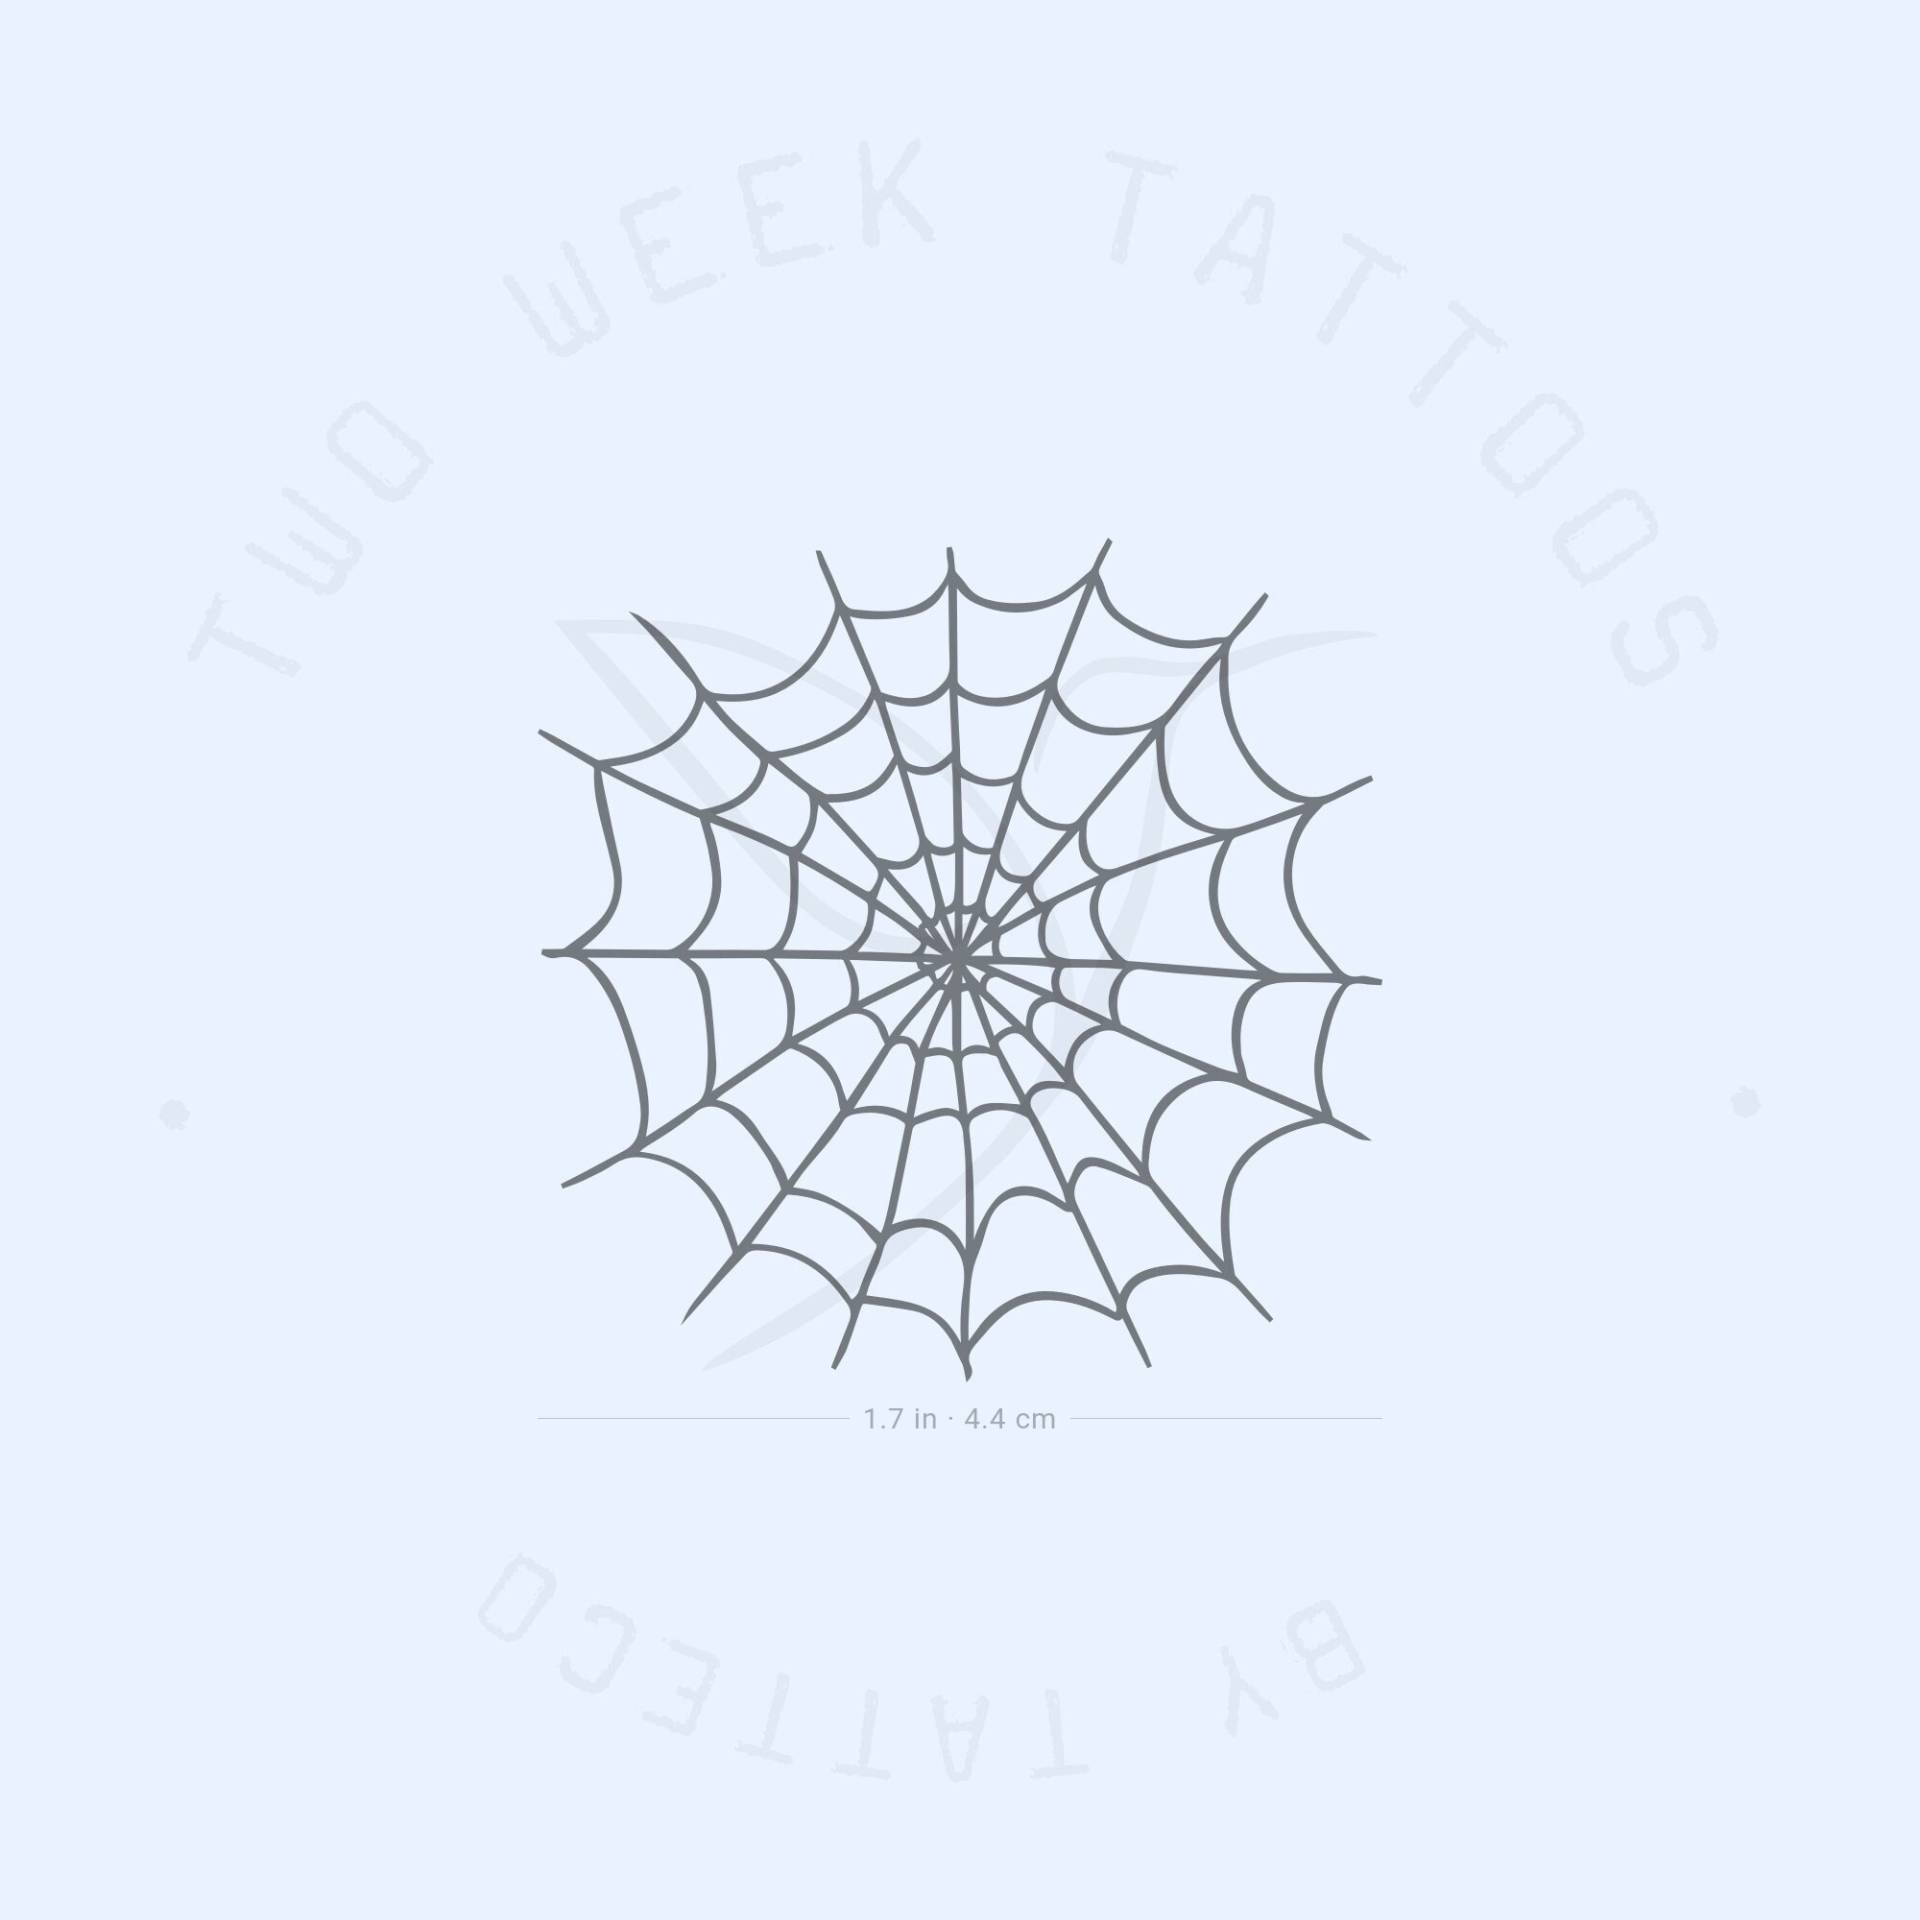 Spinnennetz Semi-Permanent Tattoo | 2Er Set von twoweektattoos